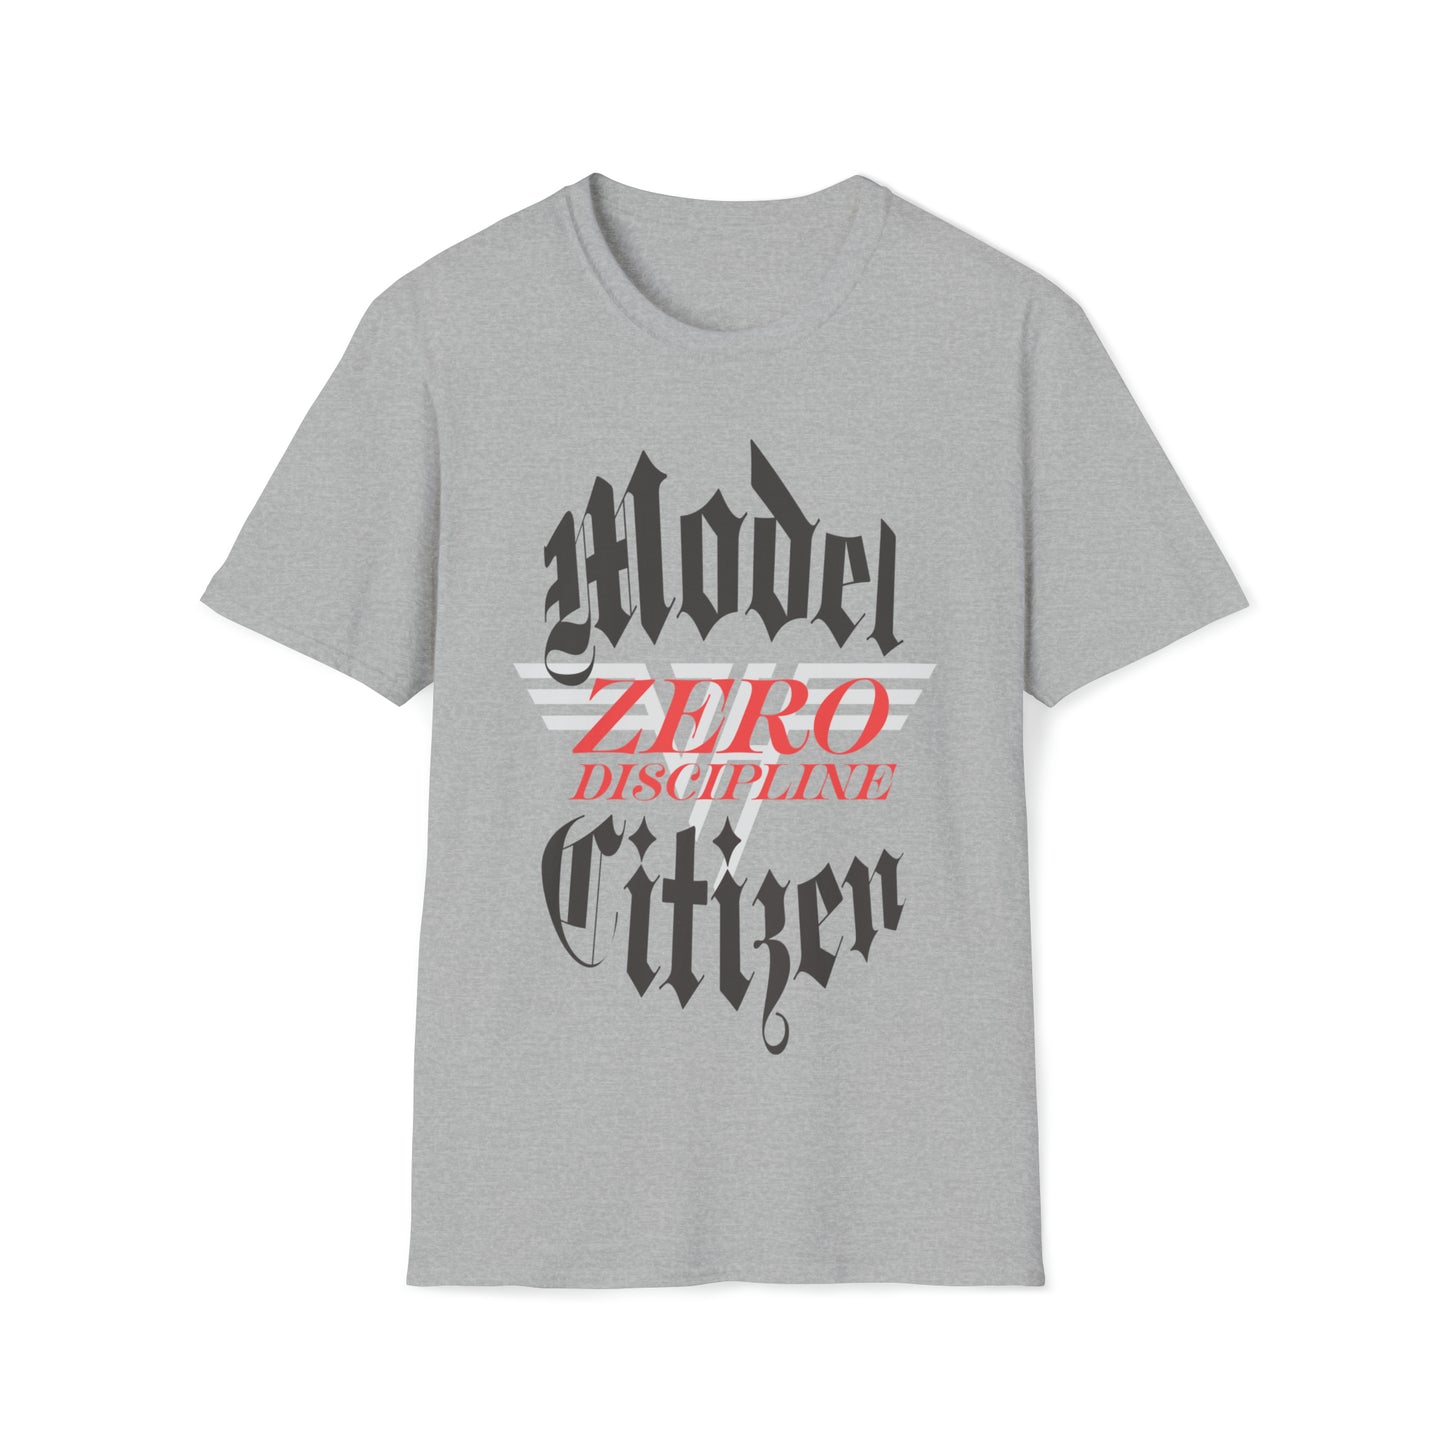 Van Halen Model Citizen / Zero Discipline Tee Sz. S to 3XL